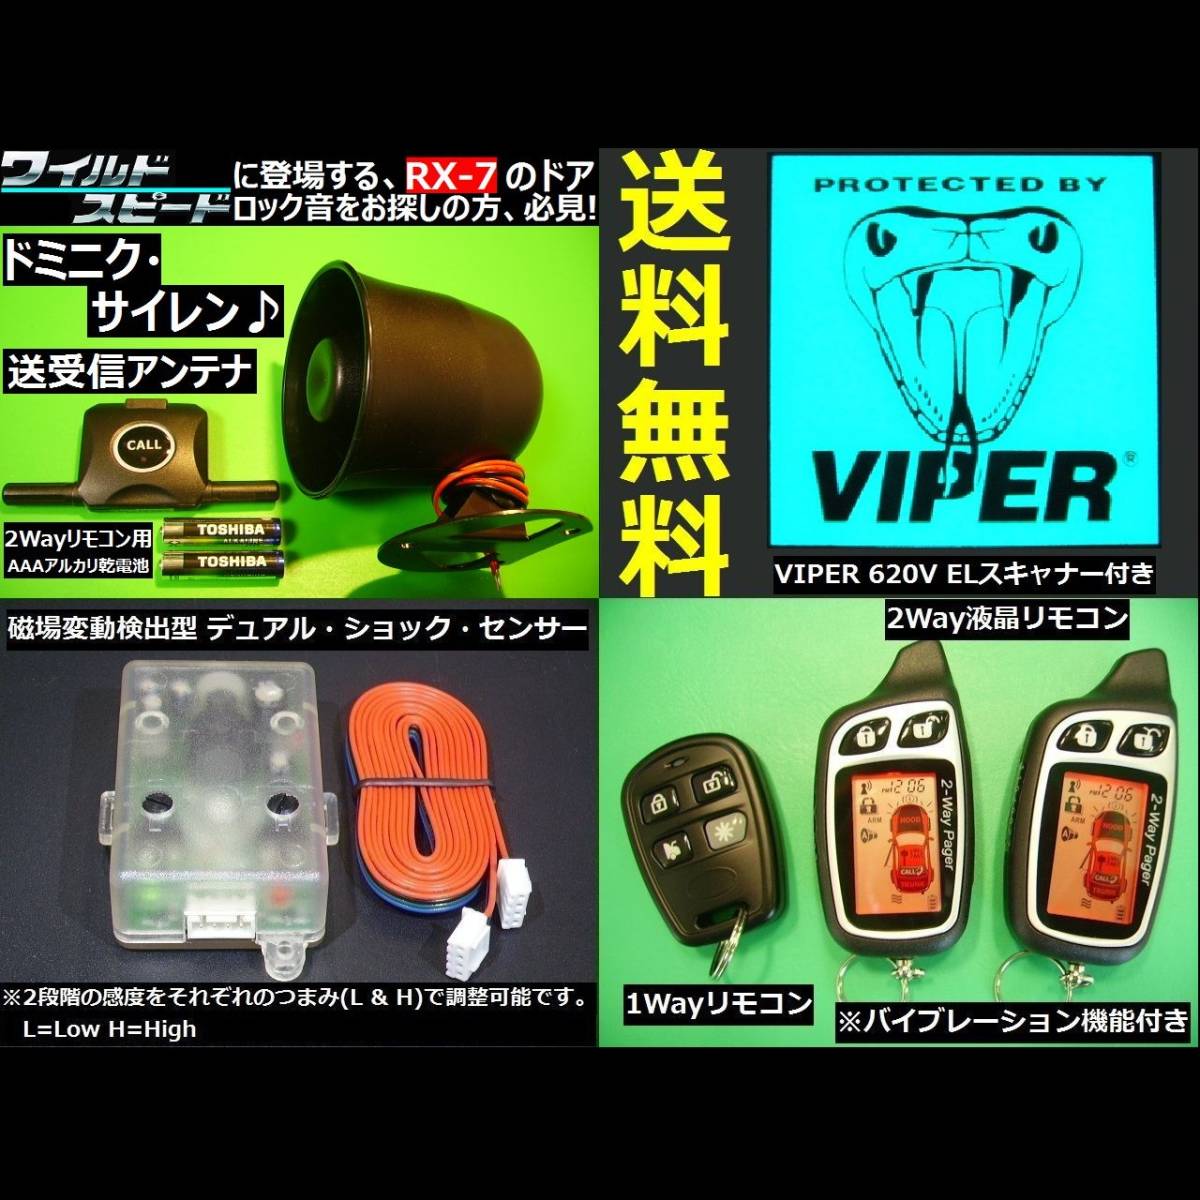 エンジンスターター カー セキュリティ キーレス エンスタ リモスタ バイパー Viper 6vスキャナー サンテカのスターボが懐かしい D Dejapan Bid And Buy Japan With 0 Commission